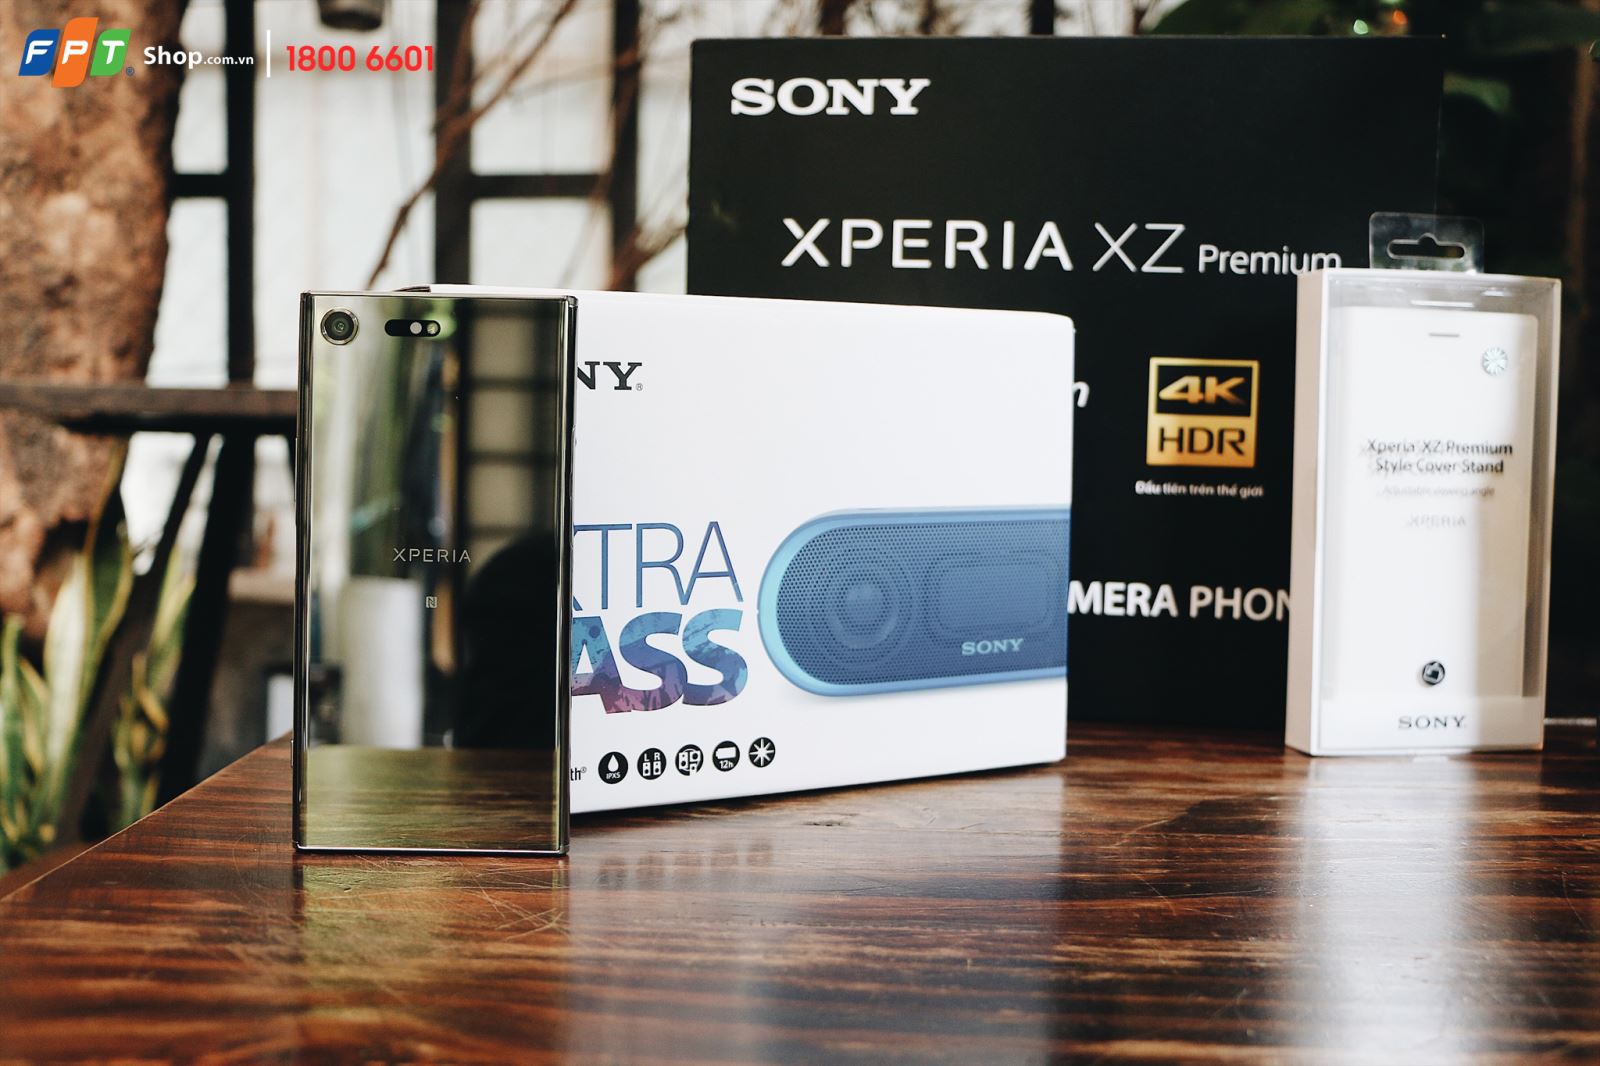 Siêu phẩm Sony Xperia XZ Premium chính thức lên kệ tại FPT Shop từ ngày 24/6